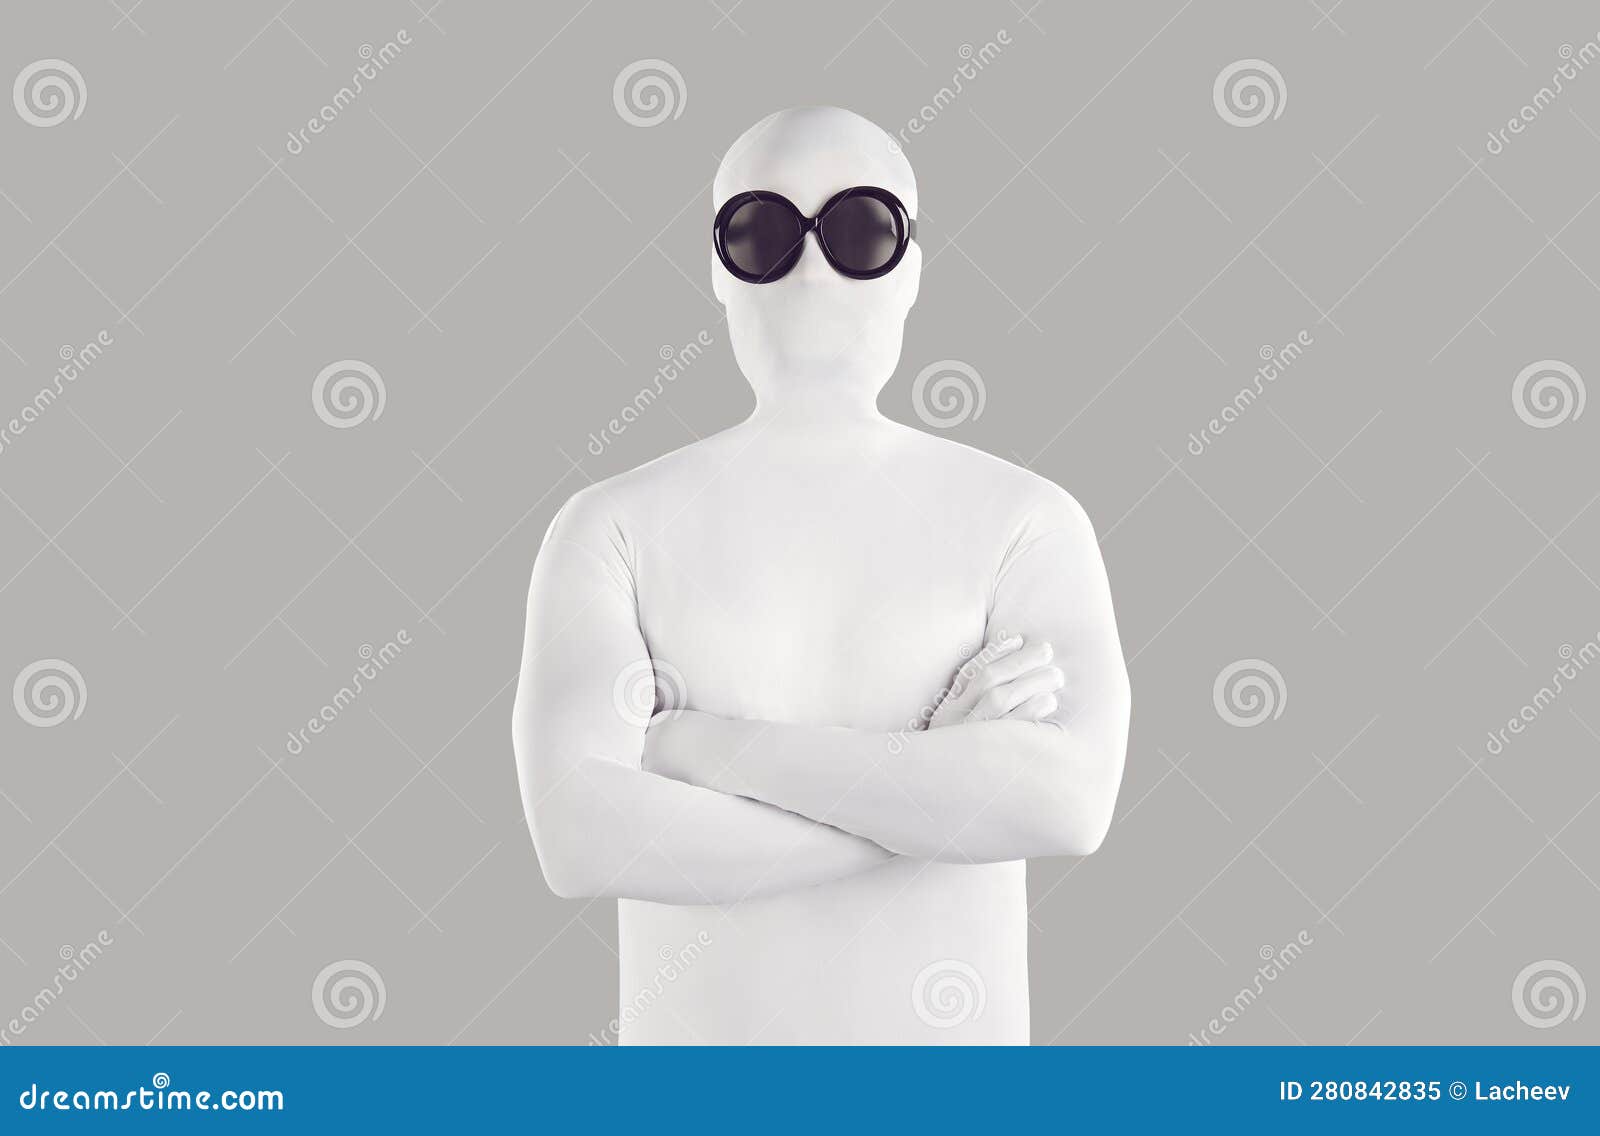 Retrato De Una Persona Con Traje De Uniforme Blanco Y Gafas De Sol Negras  Con Brazos Plegados Imagen de archivo - Imagen de plegable, mascarada:  280842835